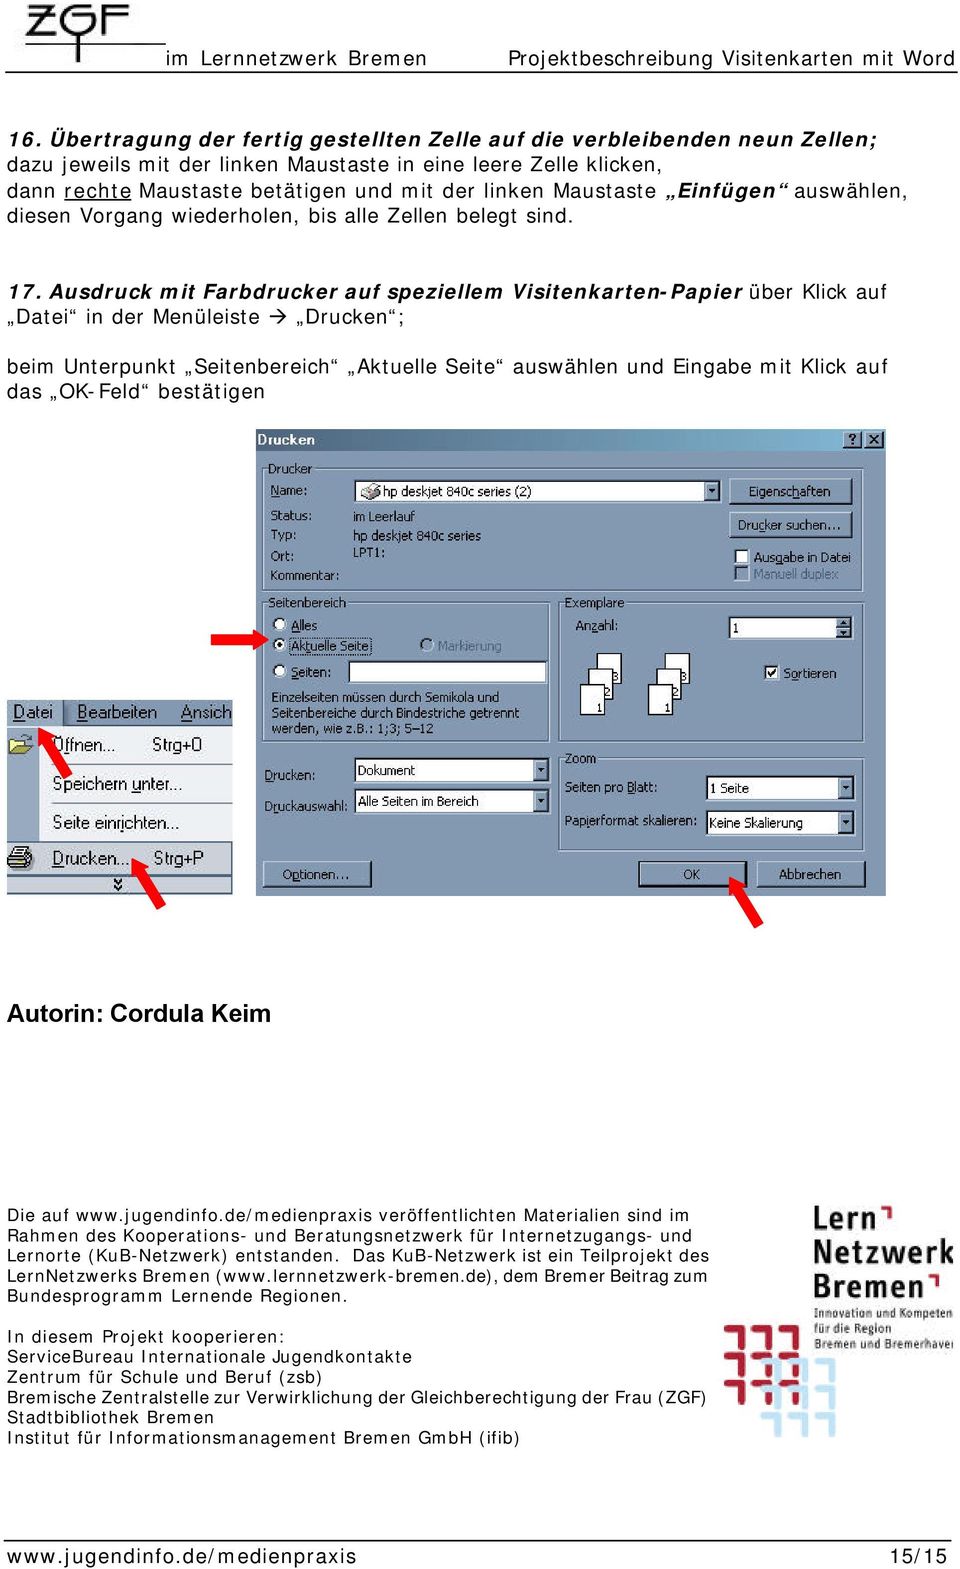 Ausdruck mit Farbdrucker auf speziellem Visitenkarten-Papier über Klick auf Datei in der Menüleiste Drucken ; beim Unterpunkt Seitenbereich Aktuelle Seite auswählen und Eingabe mit Klick auf das